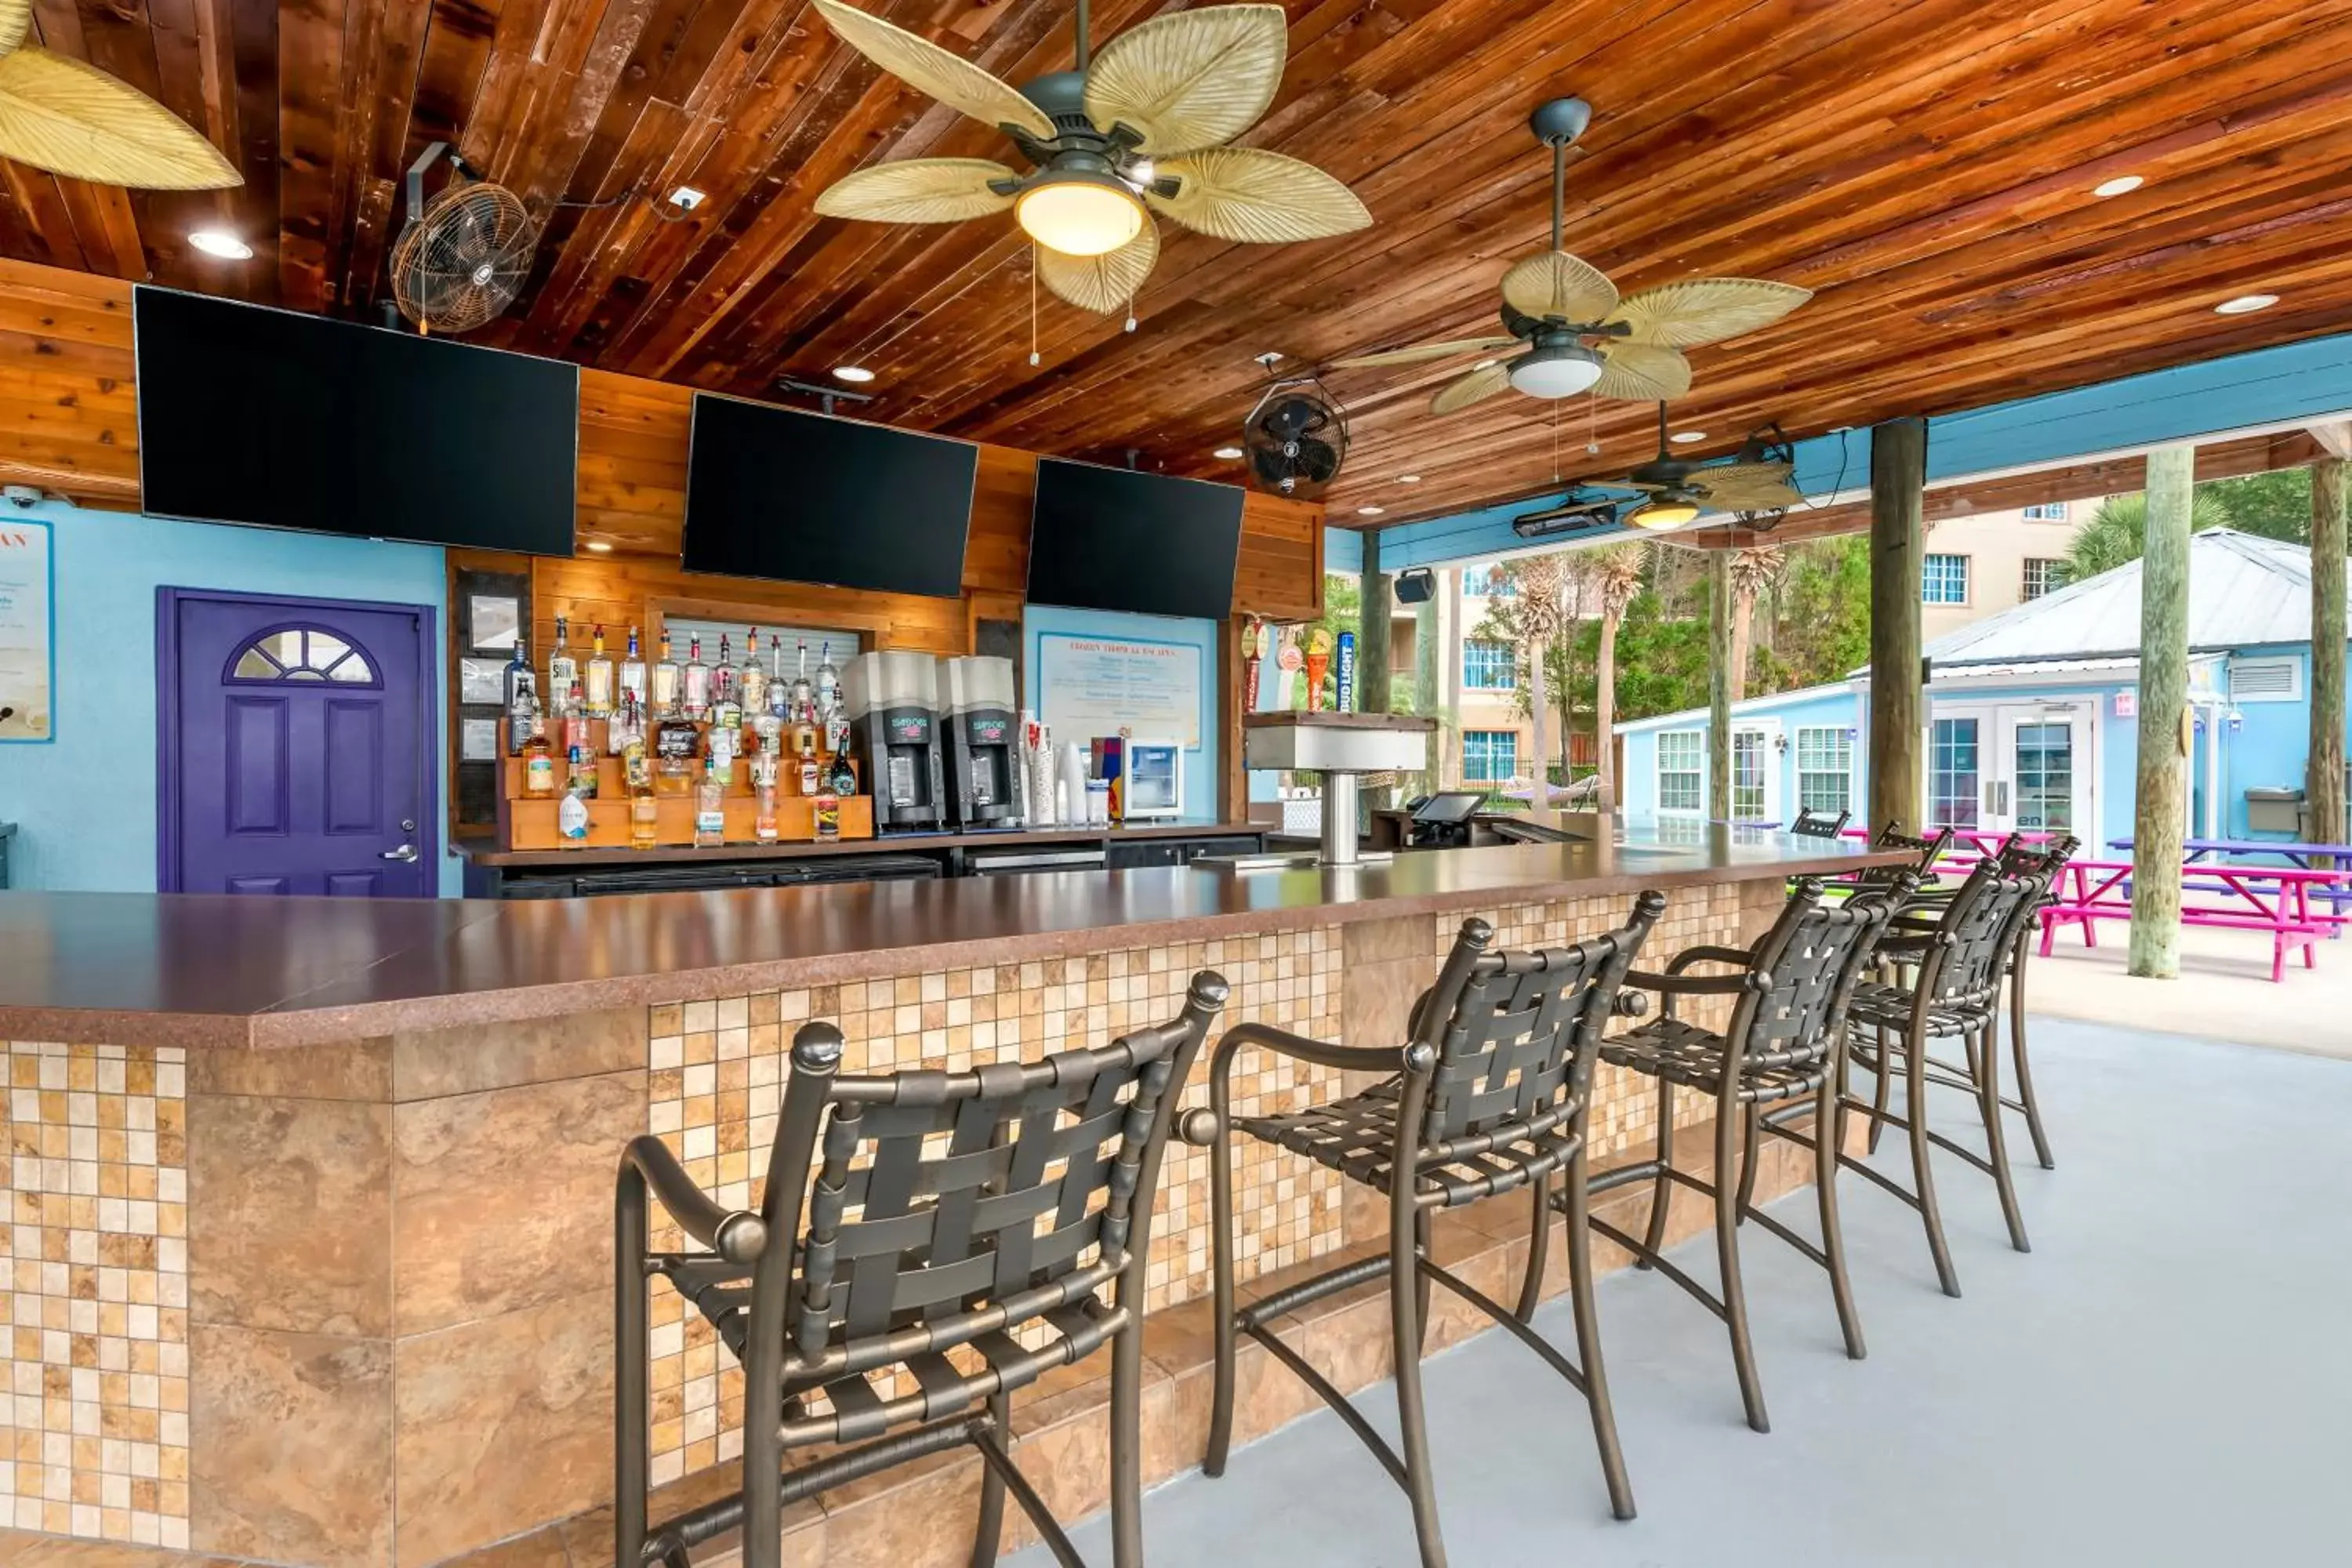 Restaurant/places to eat, Lounge/Bar in Liki Tiki Village